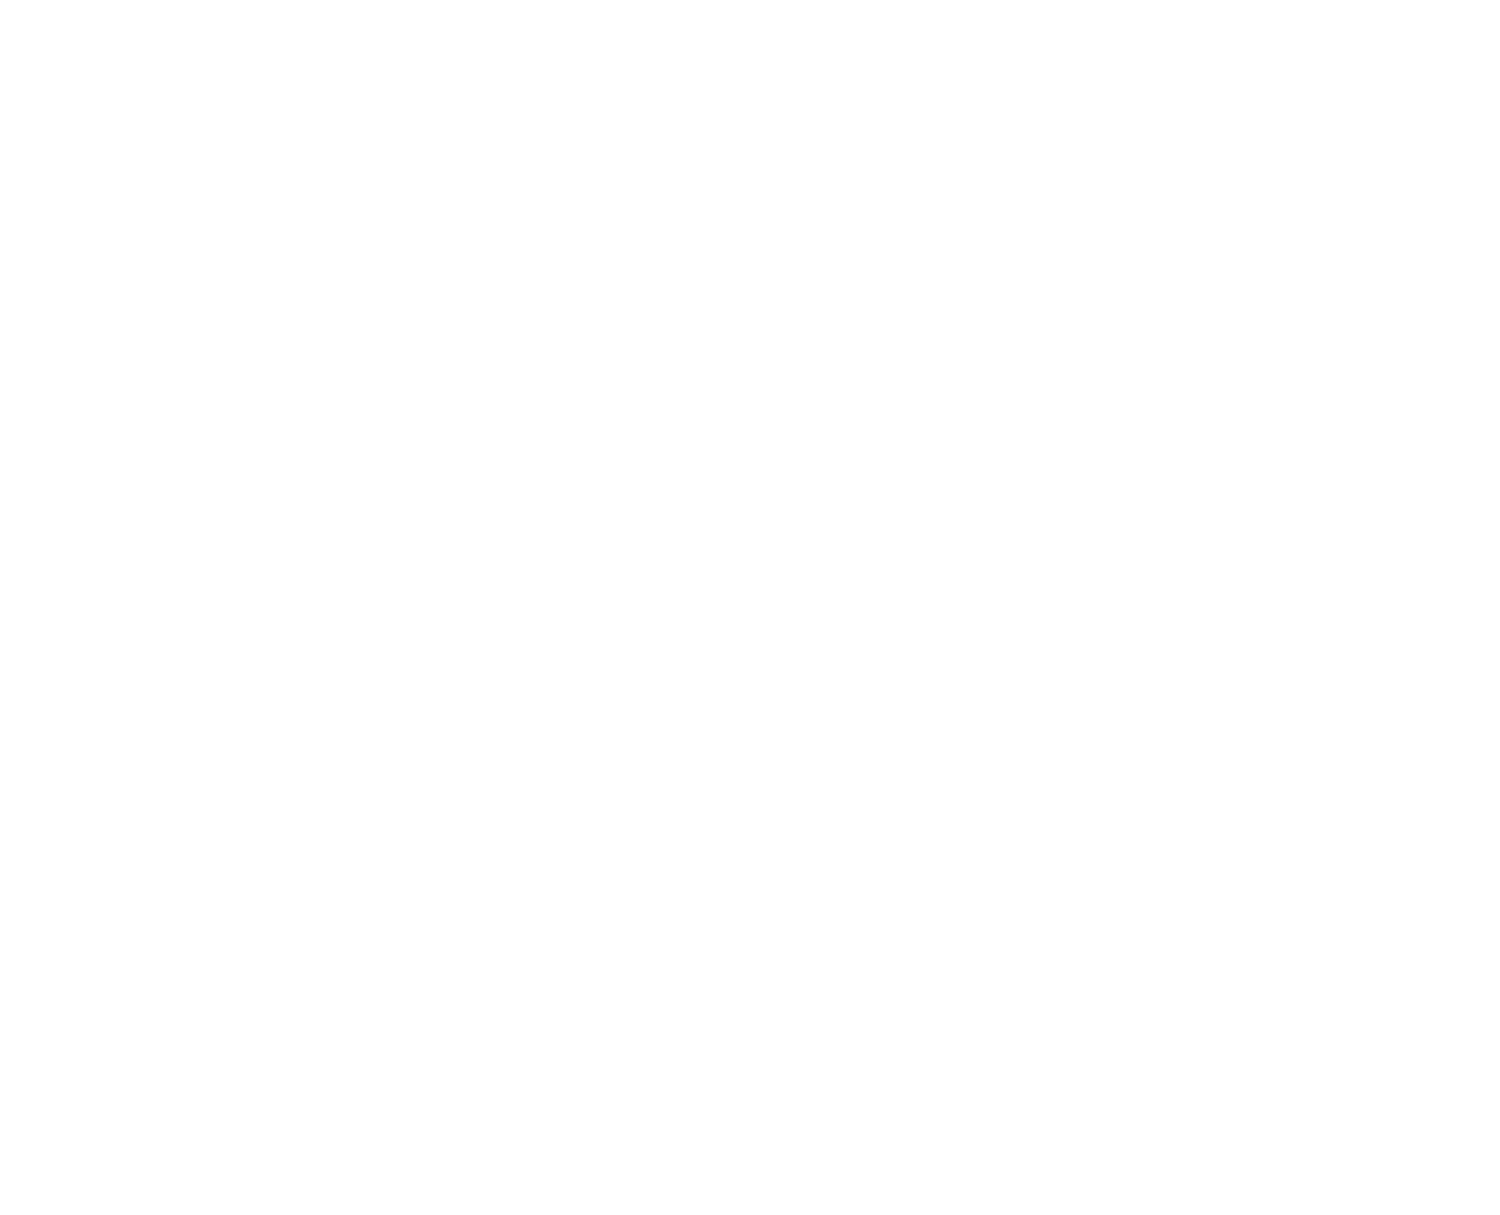  Klosh Group